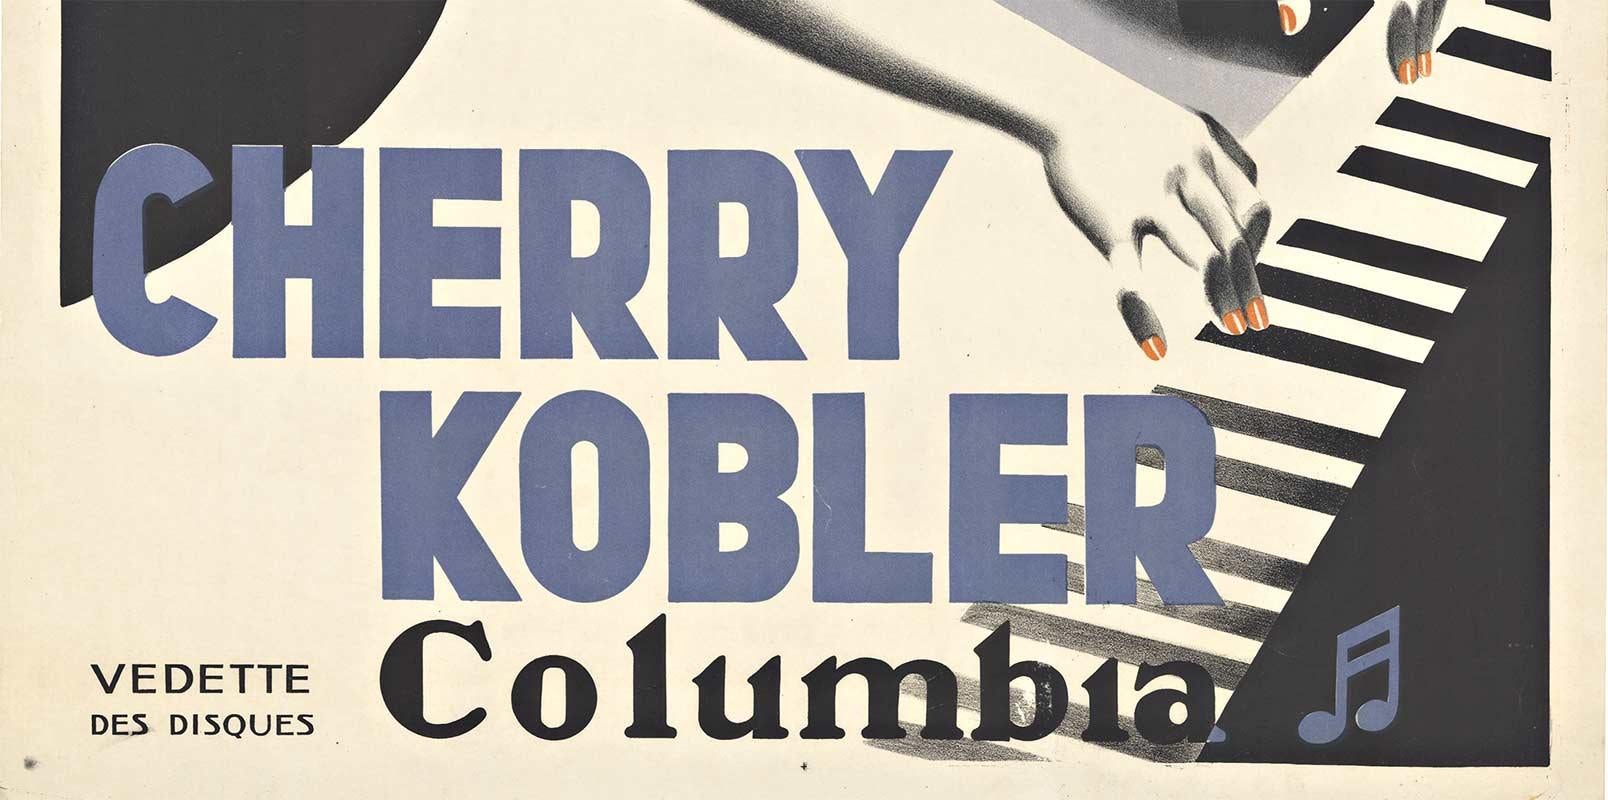 Cherry Kobler - Columbia, affiche vintage française originale, lithographie complète - Conceptuel Print par Pierre Marrast